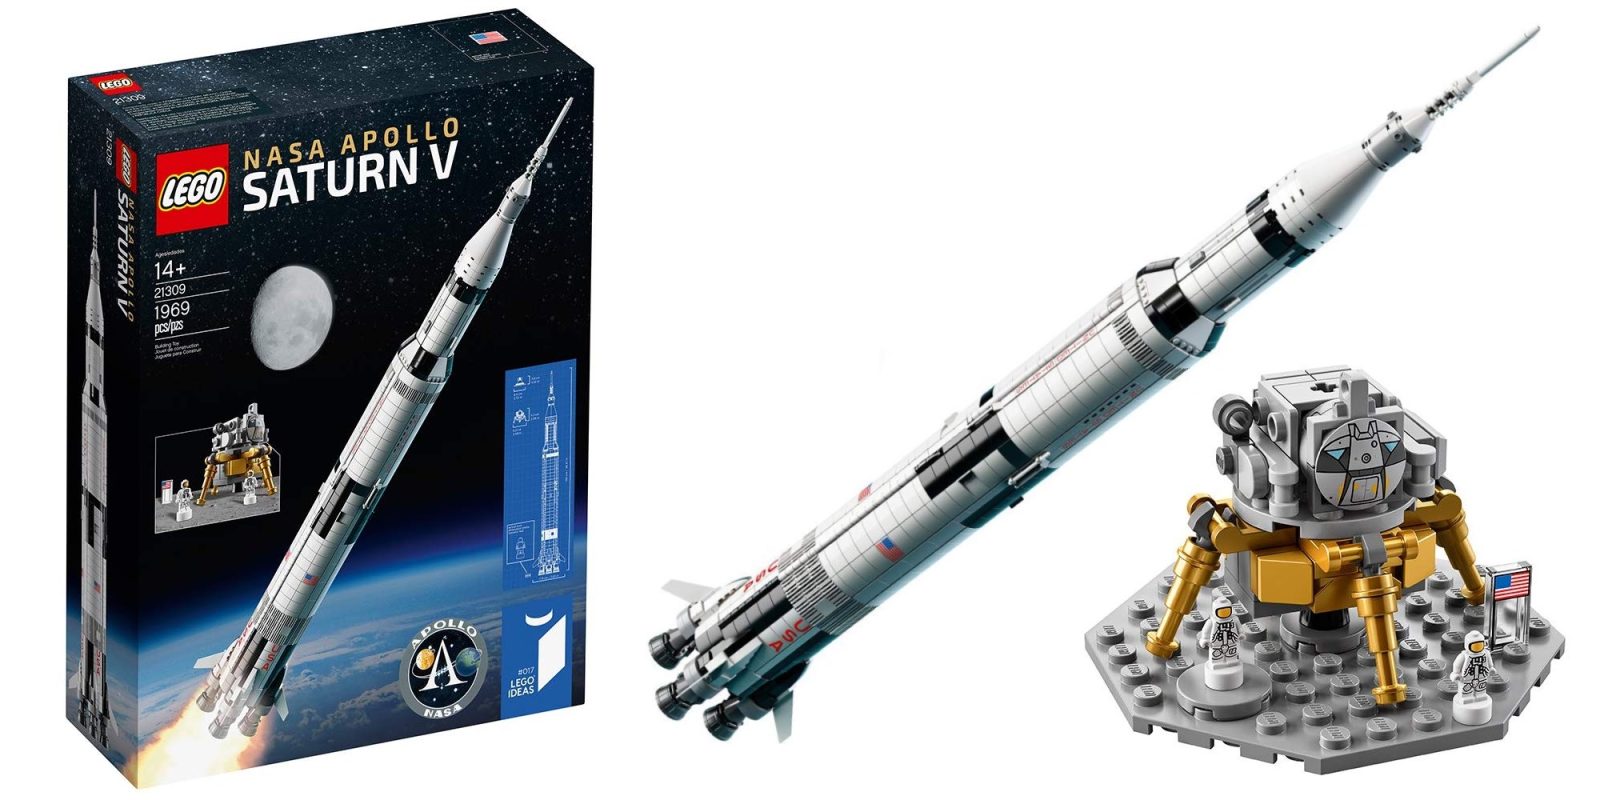 NASA Saturn V Lego Set